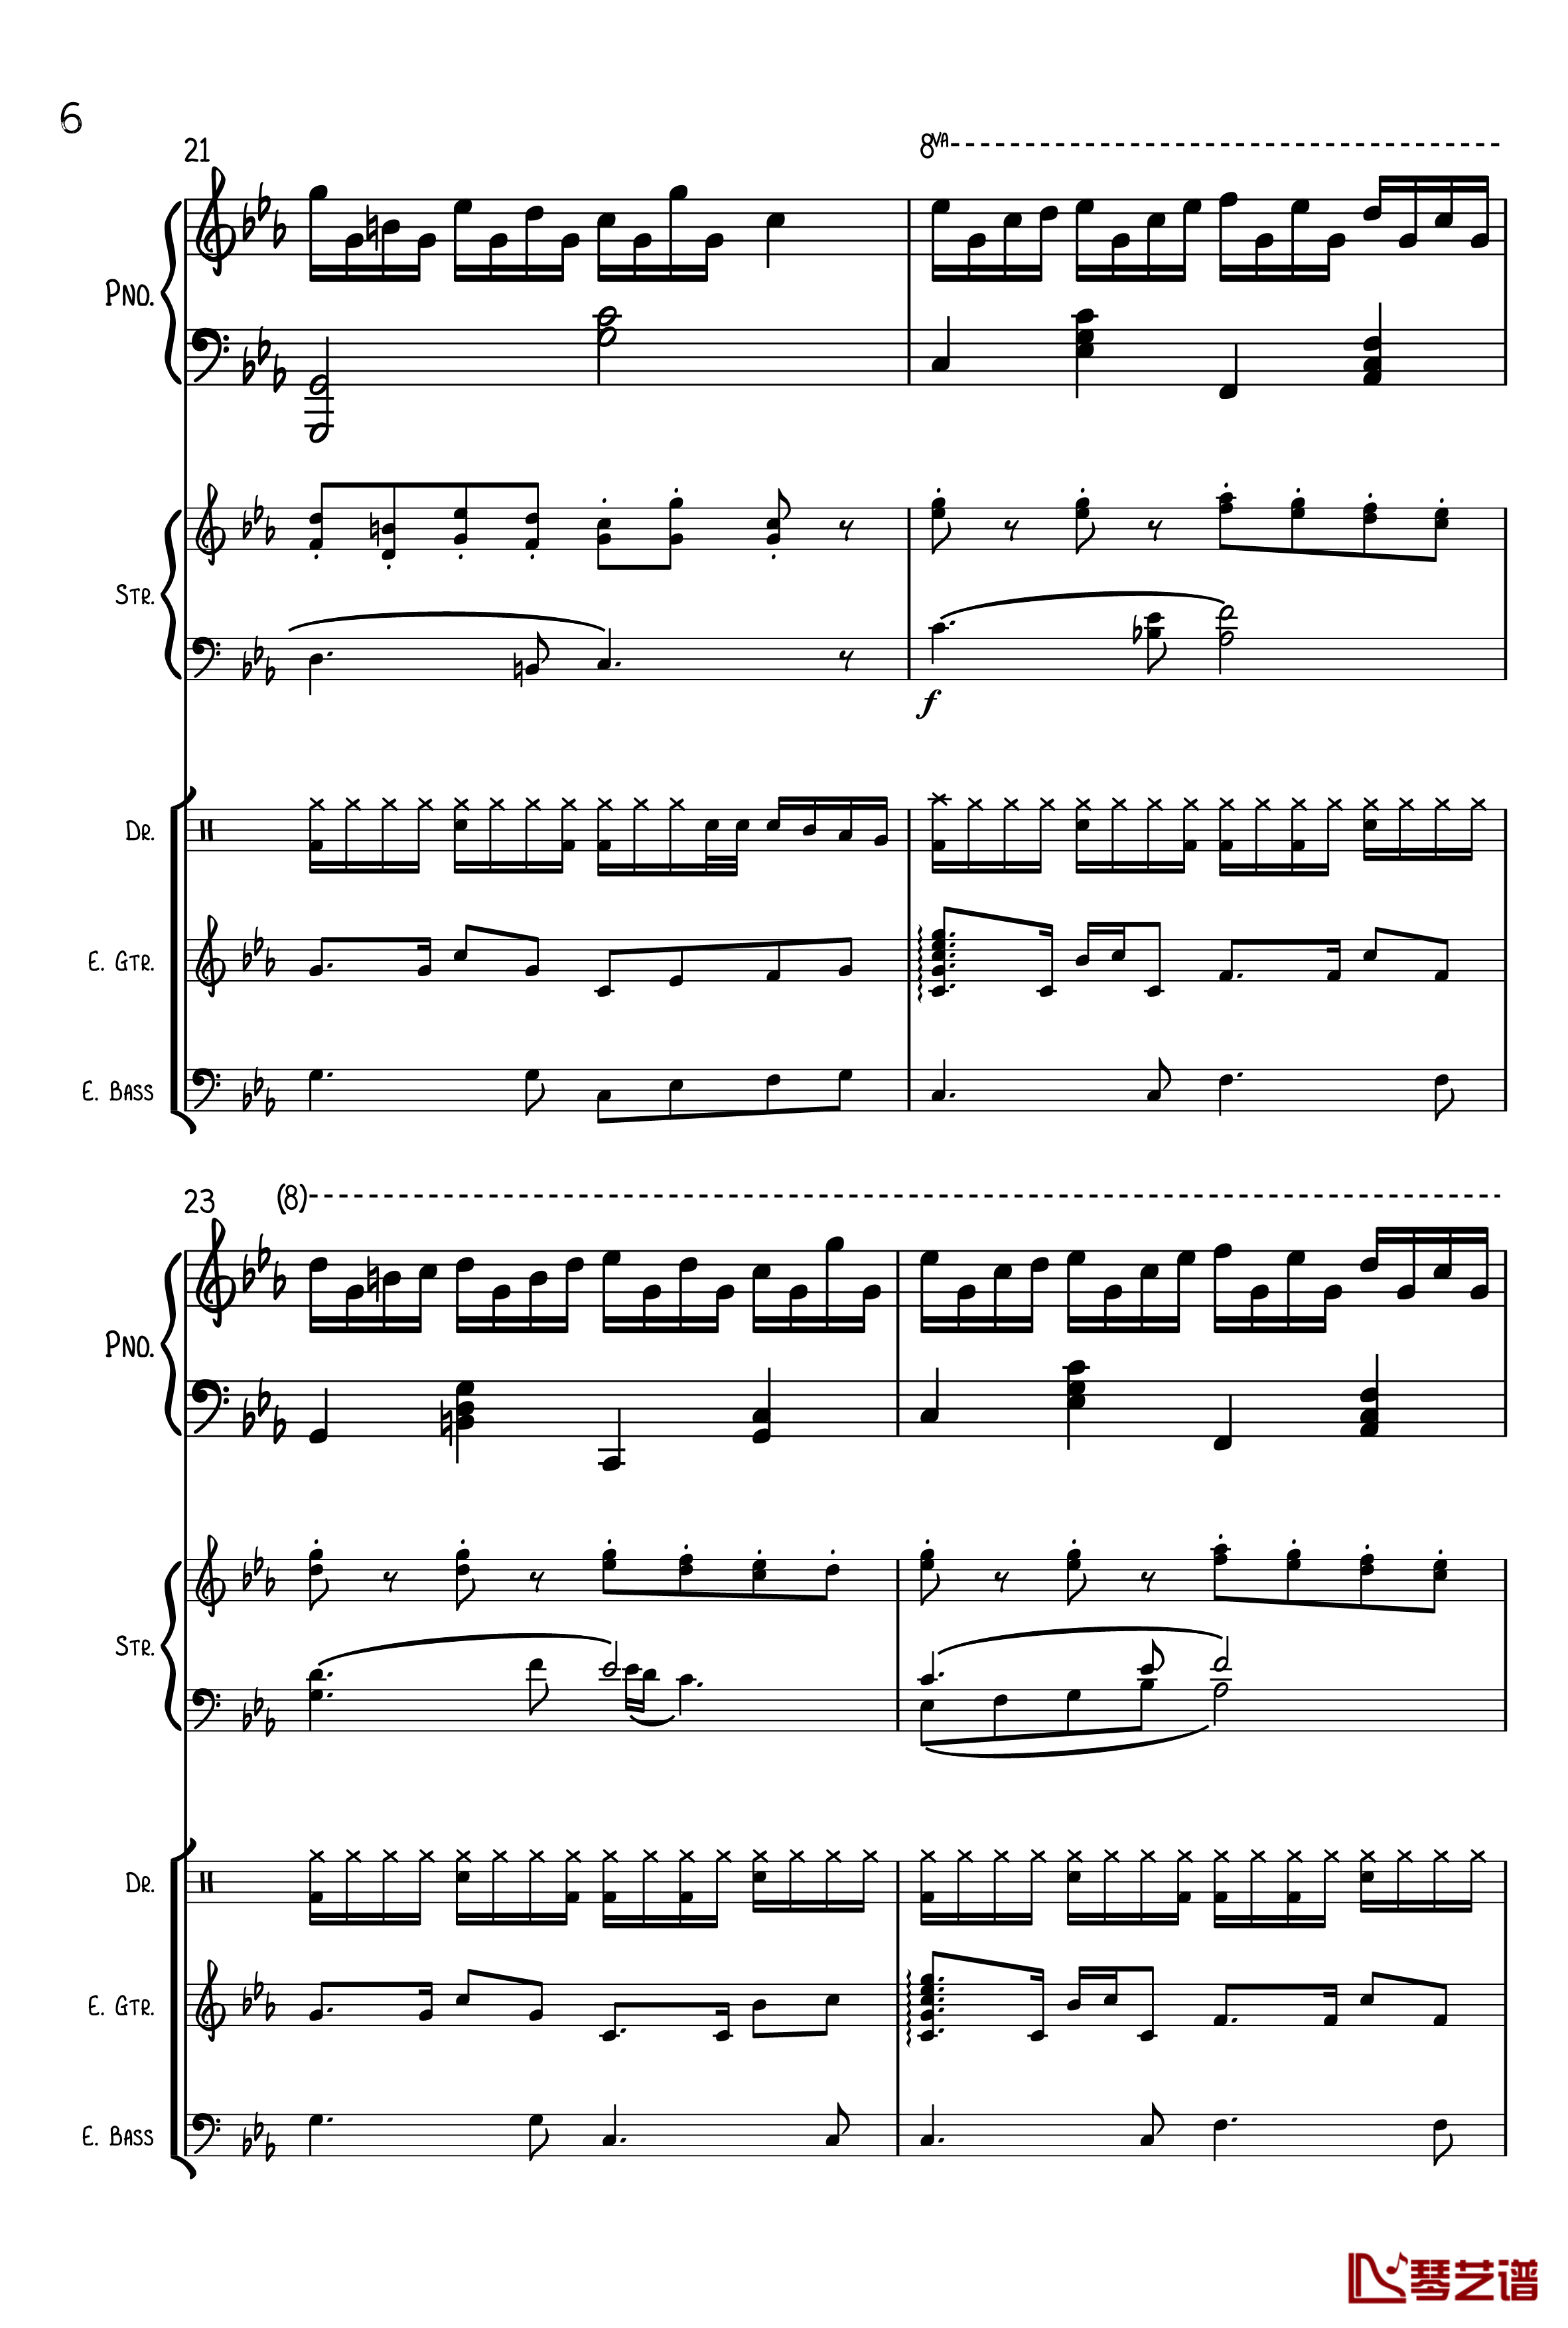 克罗地亚狂想曲钢琴谱-总谱-马克西姆-Maksim·Mrvica6